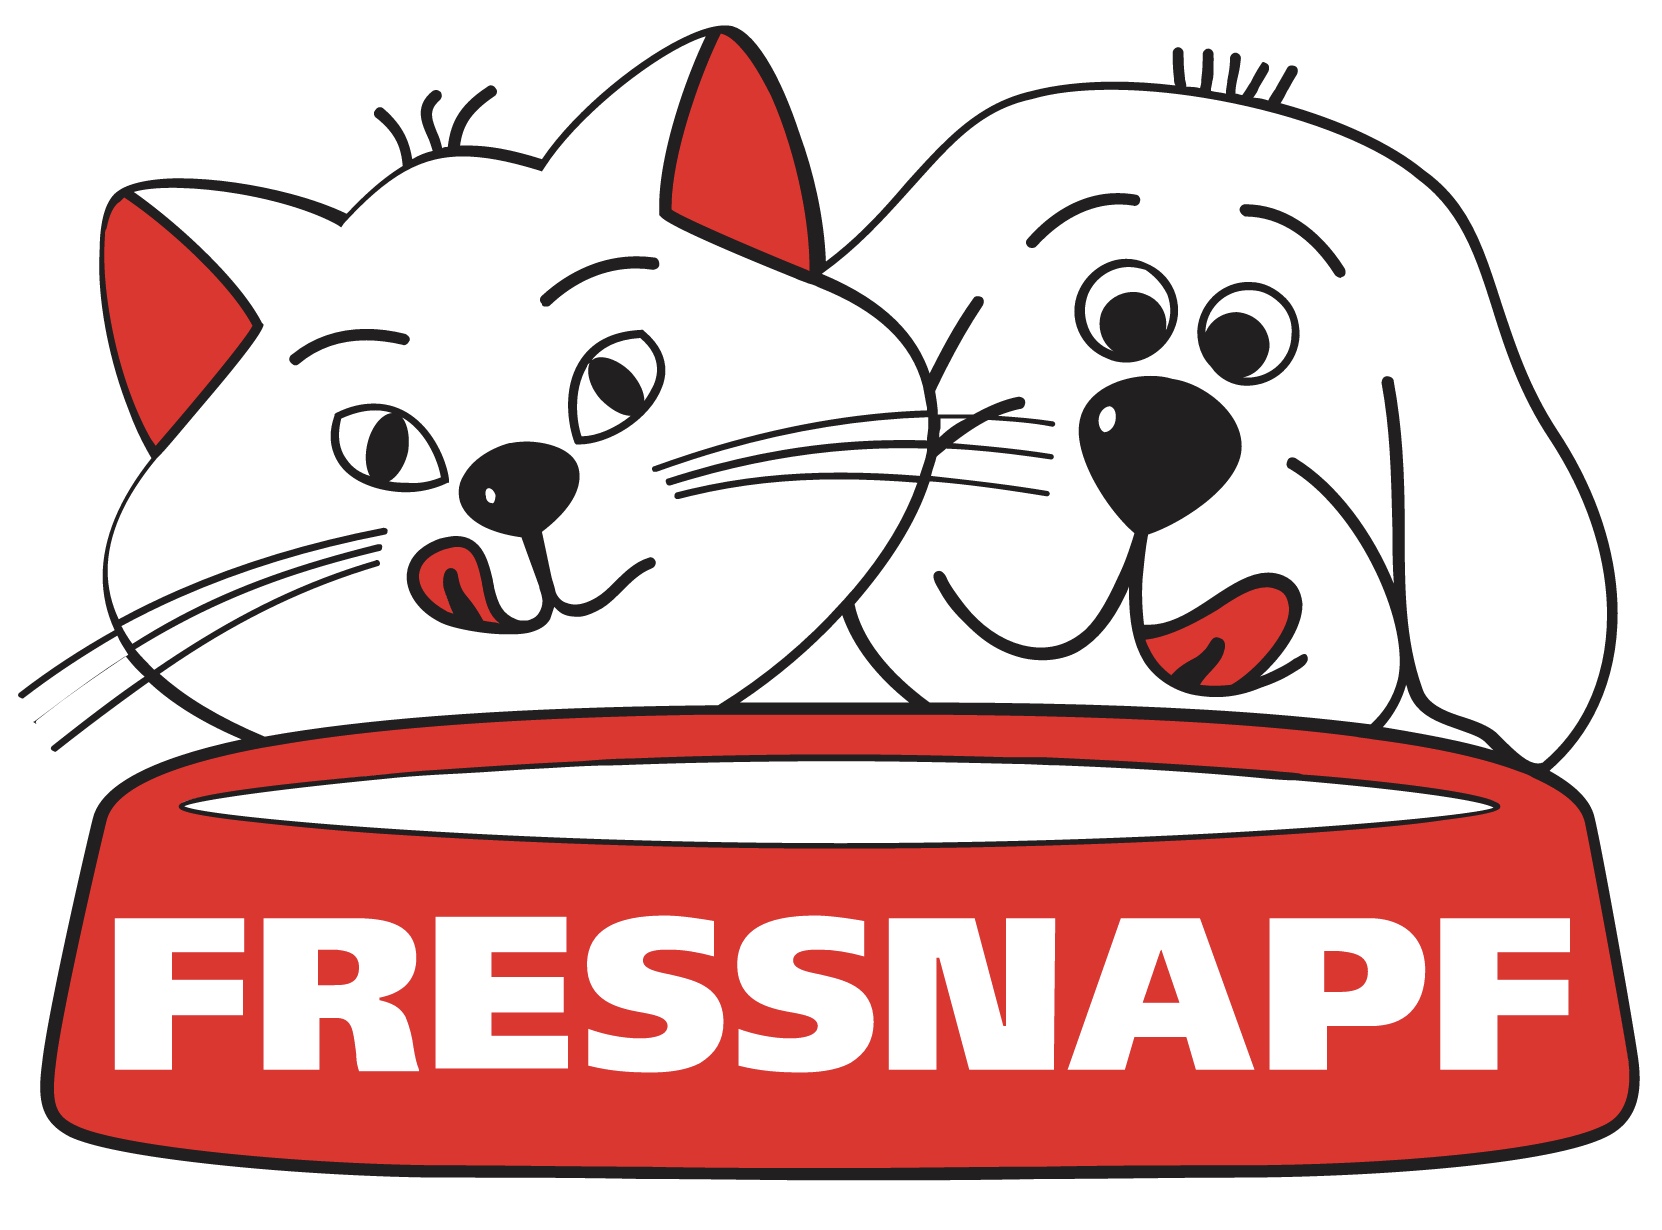 Fressnapf-Online-Shop DE